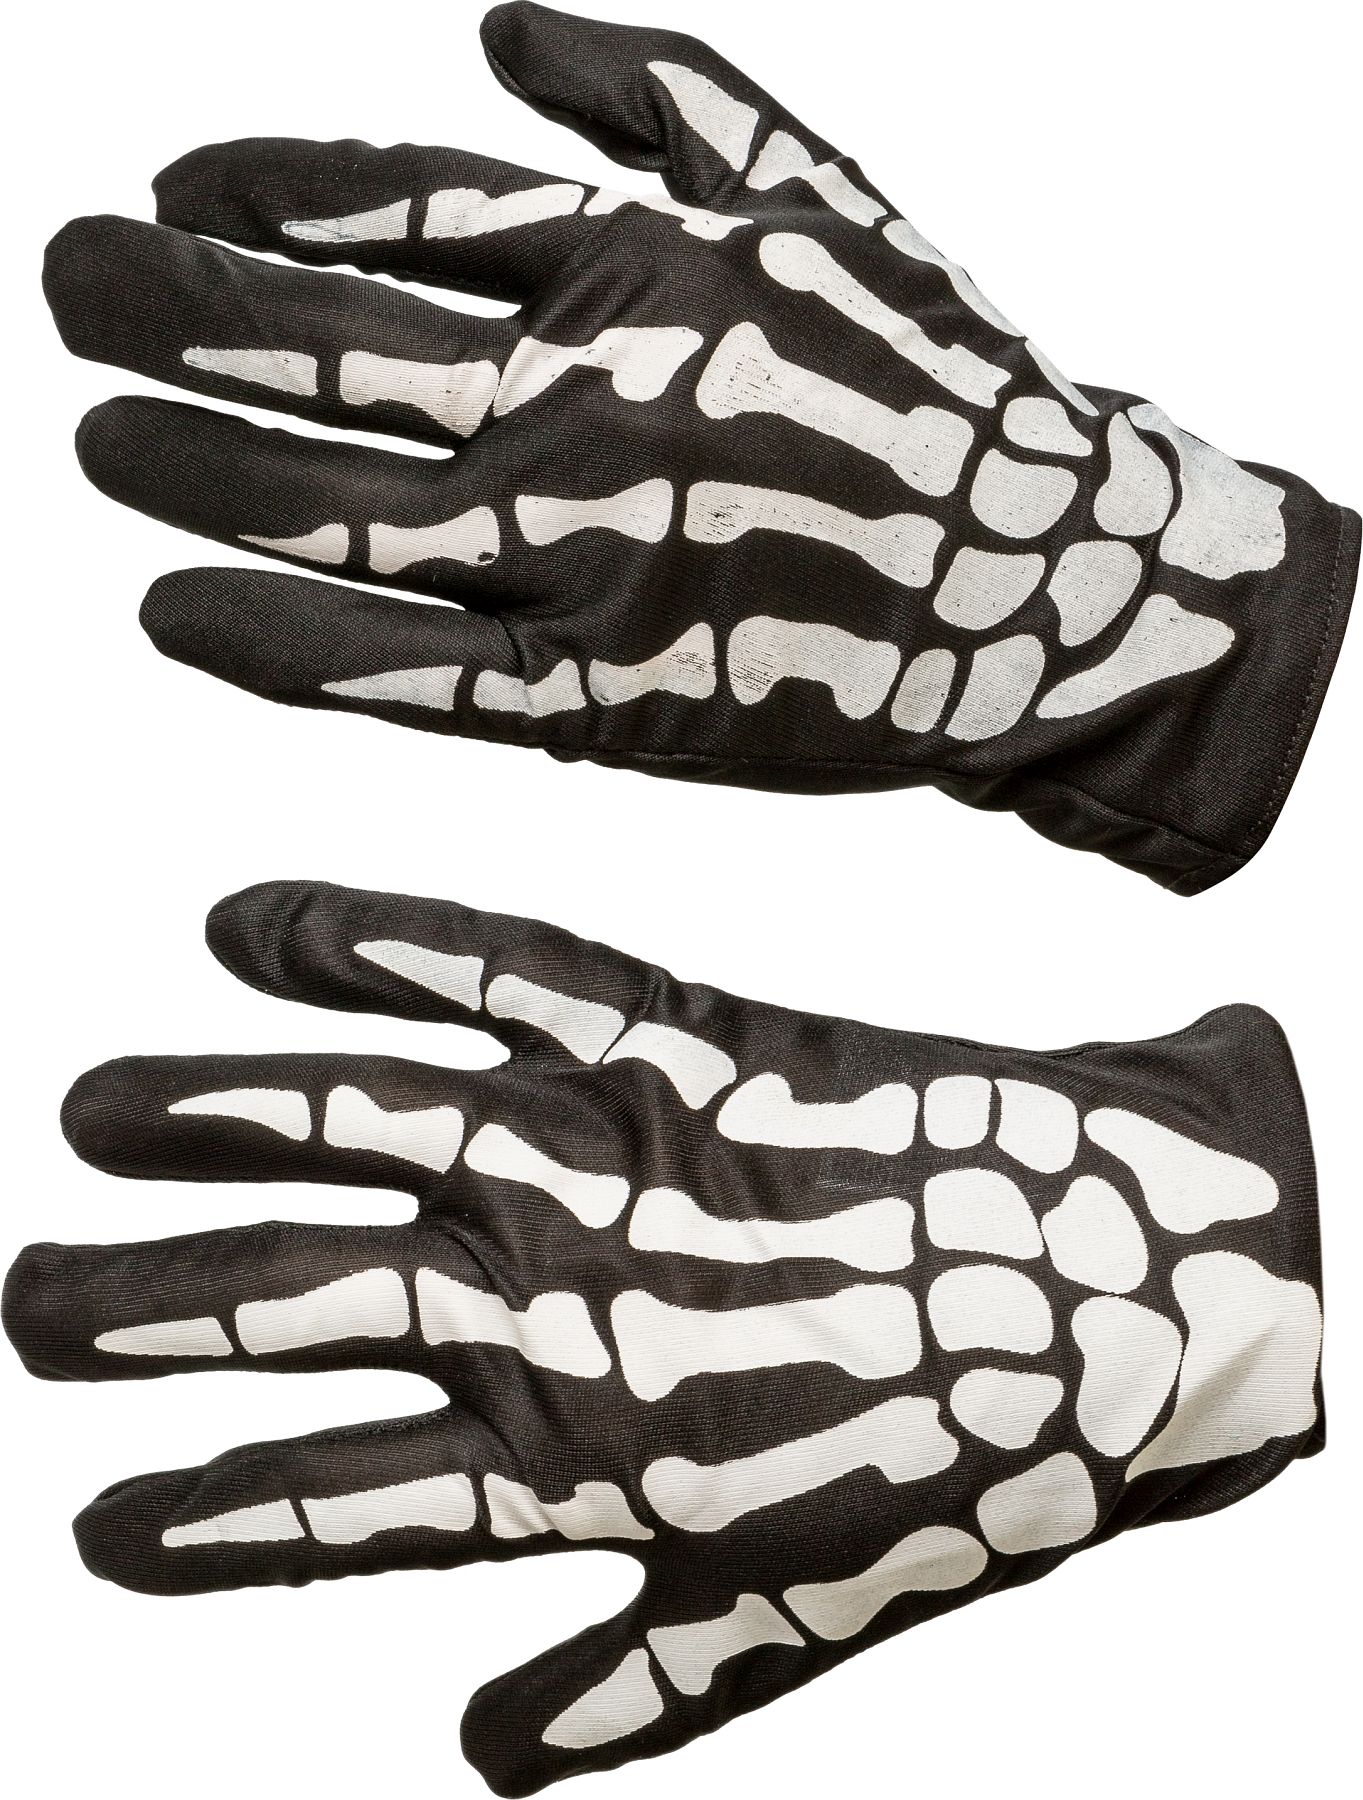 Gloves skeleton